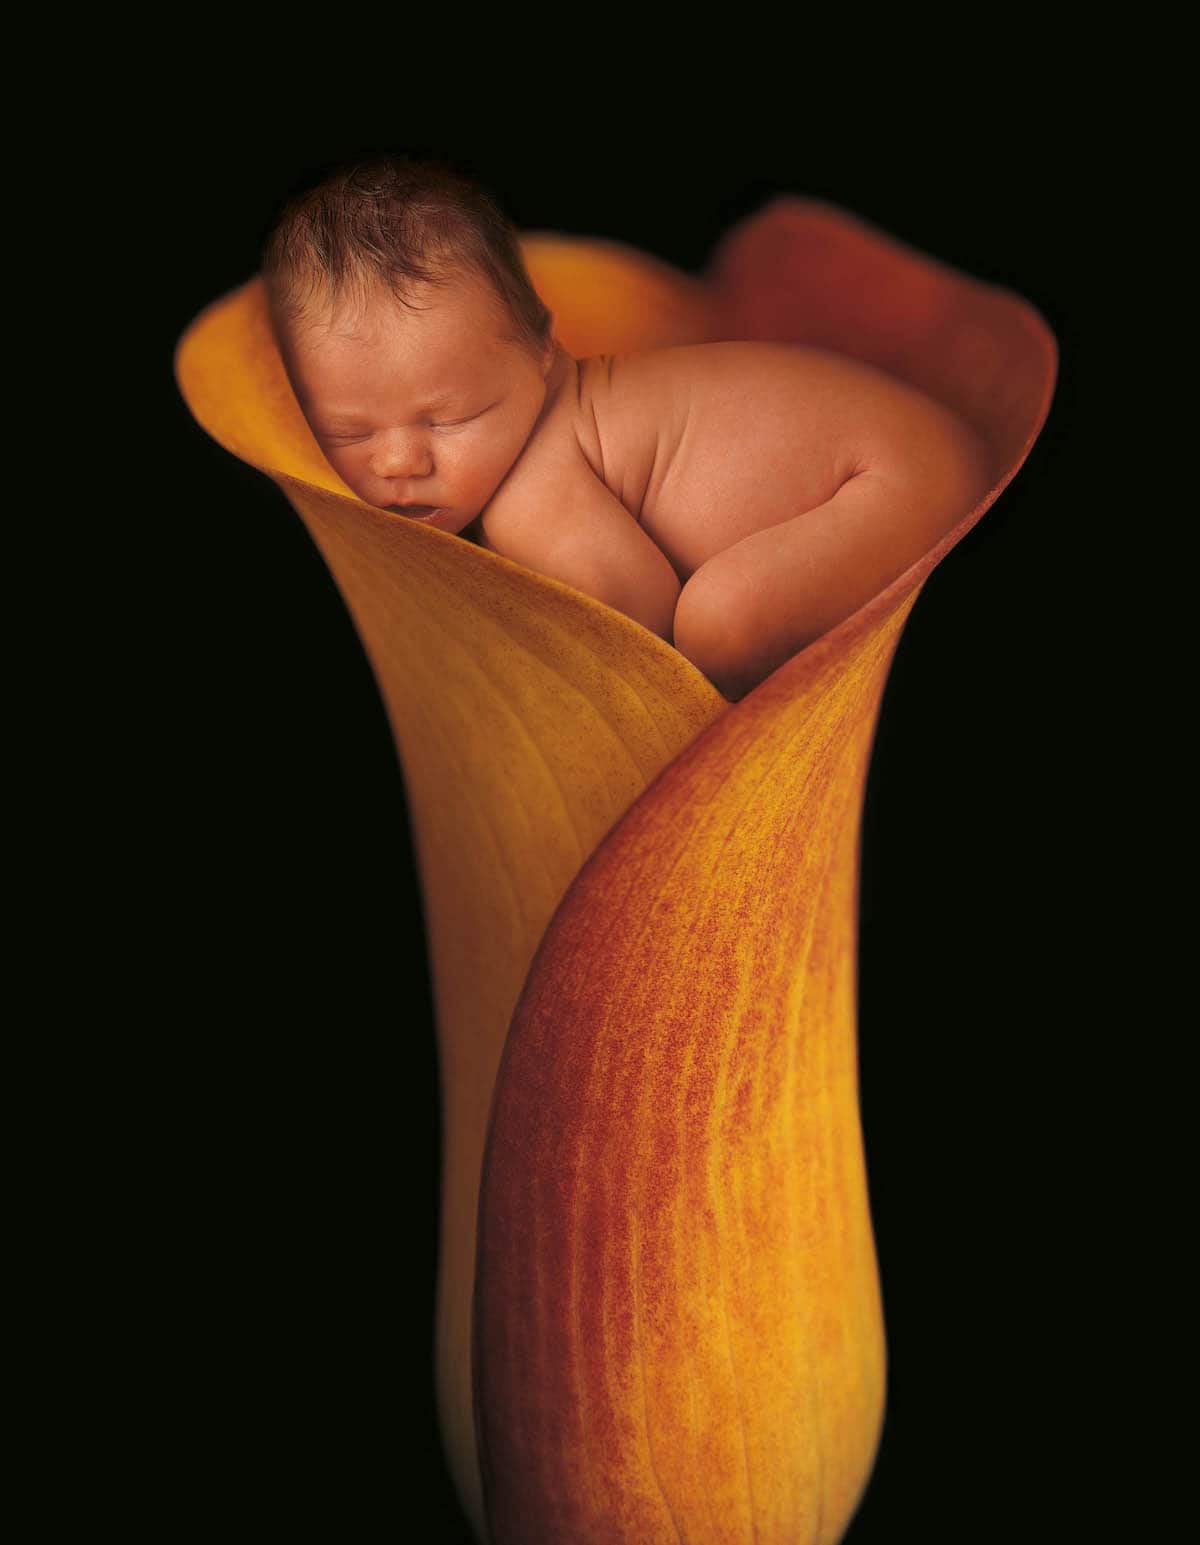 Fotos de bebés recién nacidos por Anne Geddes